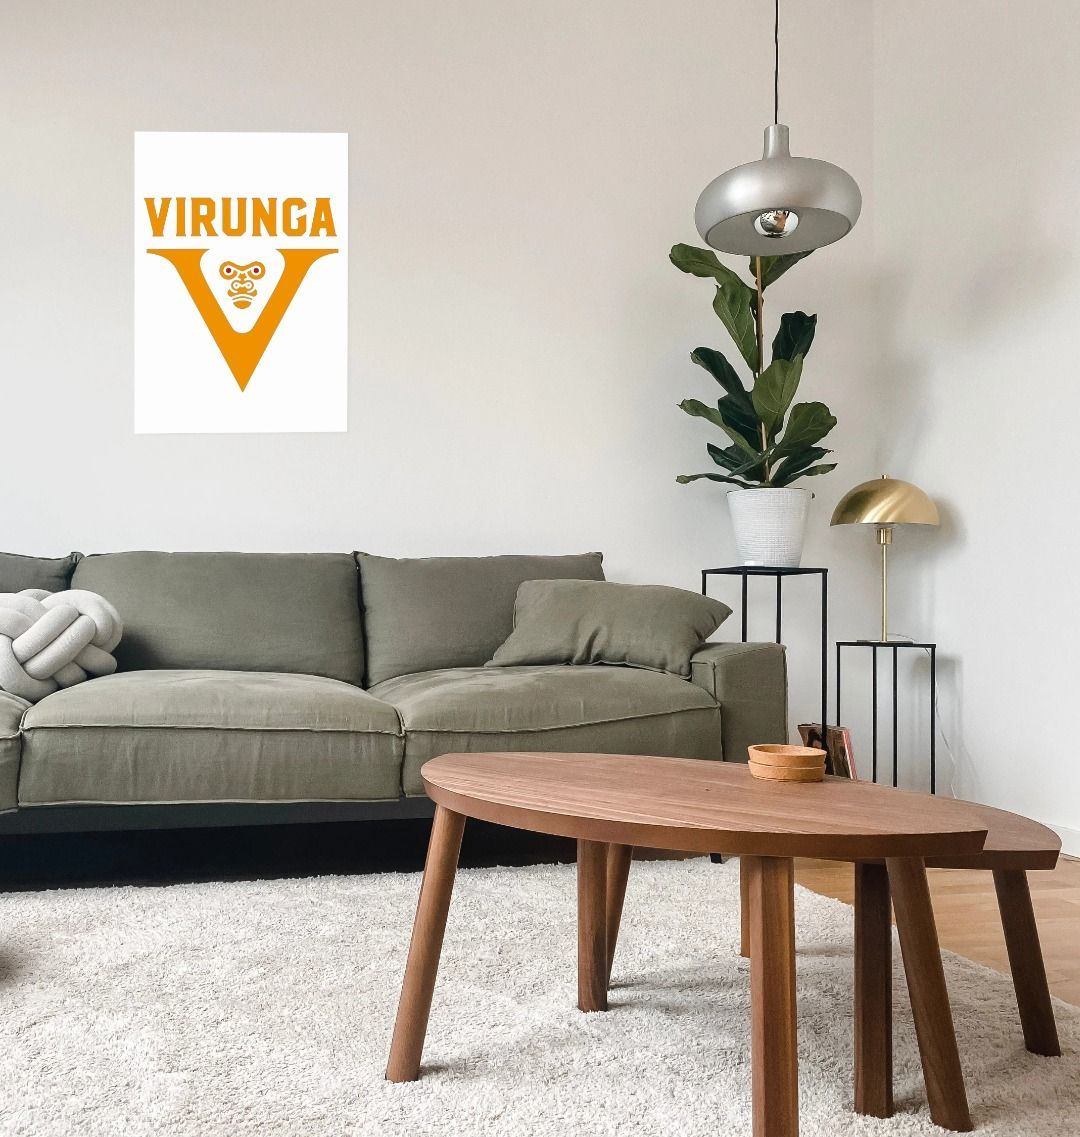 V pour Virunga Poster